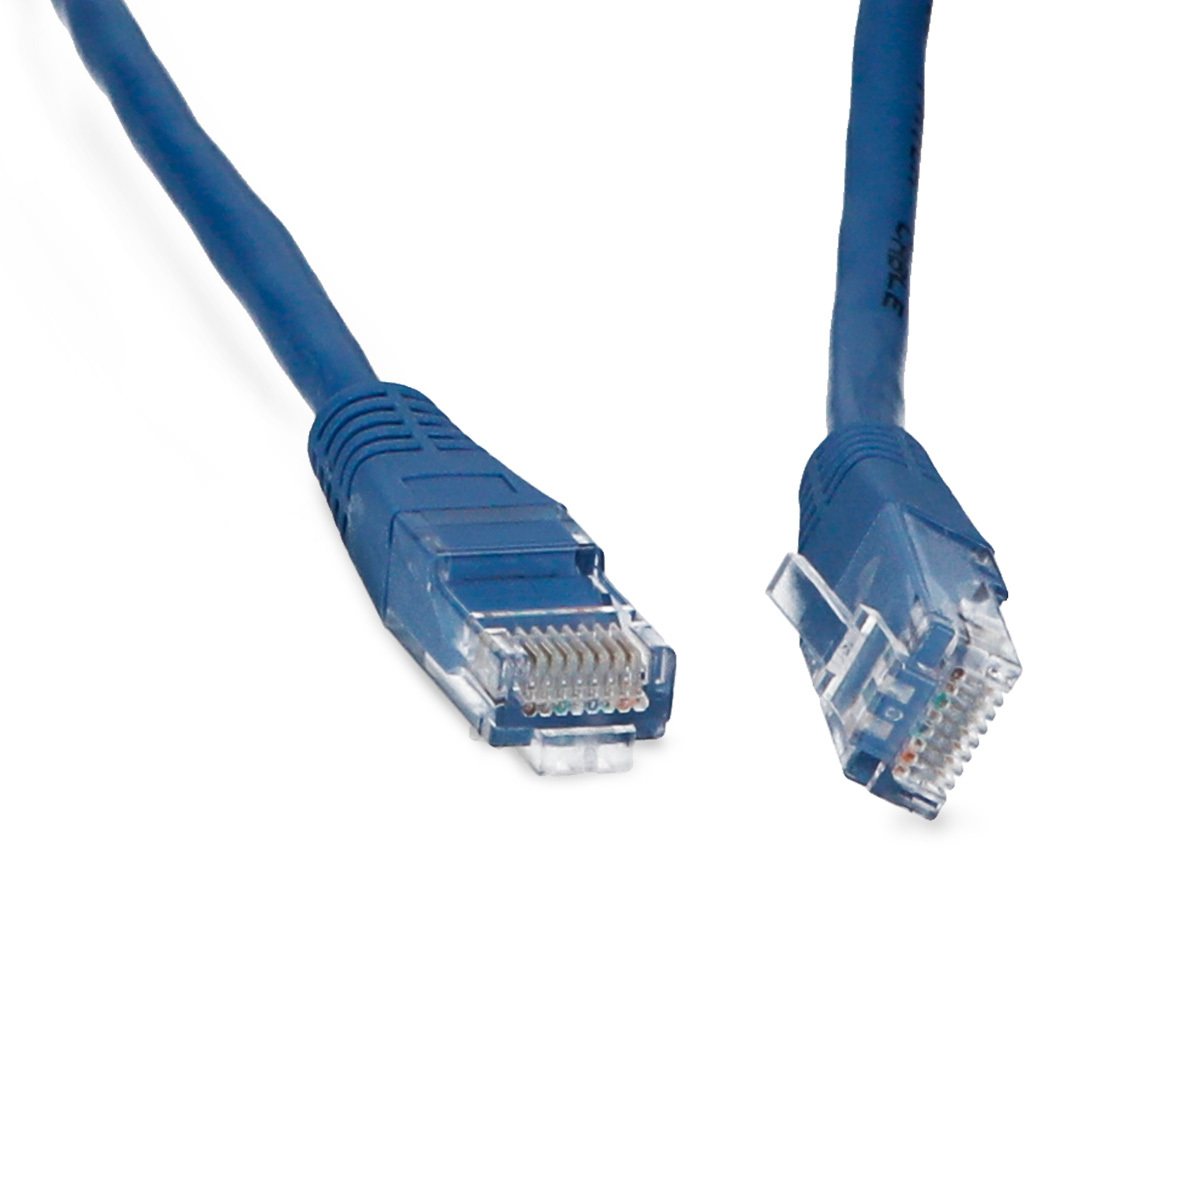 Cable Ethernet CAT 5e Spectra  metros Azul | Office Depot Mexico